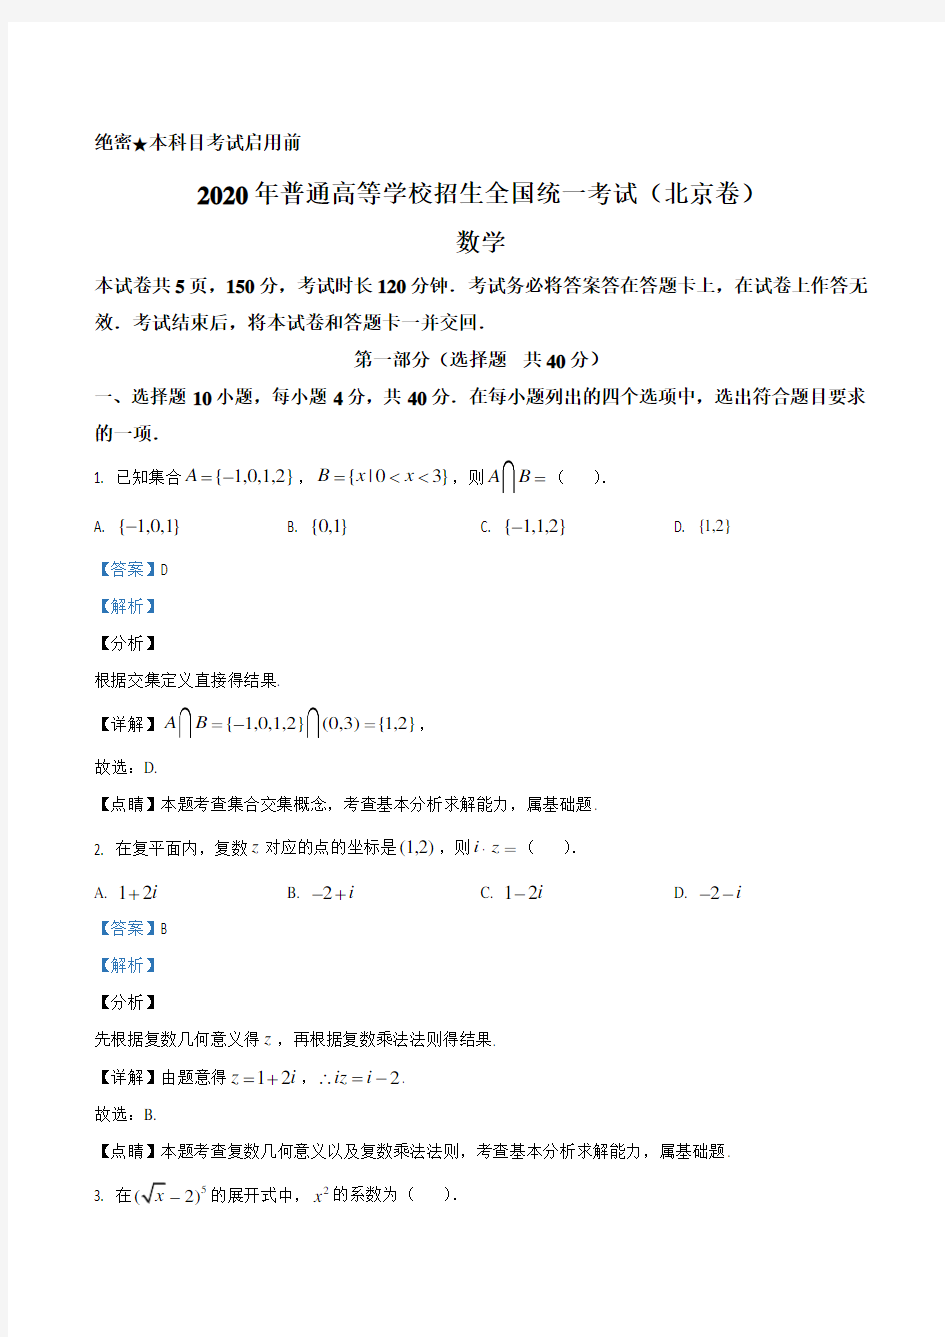 【试卷】2020年北京市高考数学试卷(解析版)